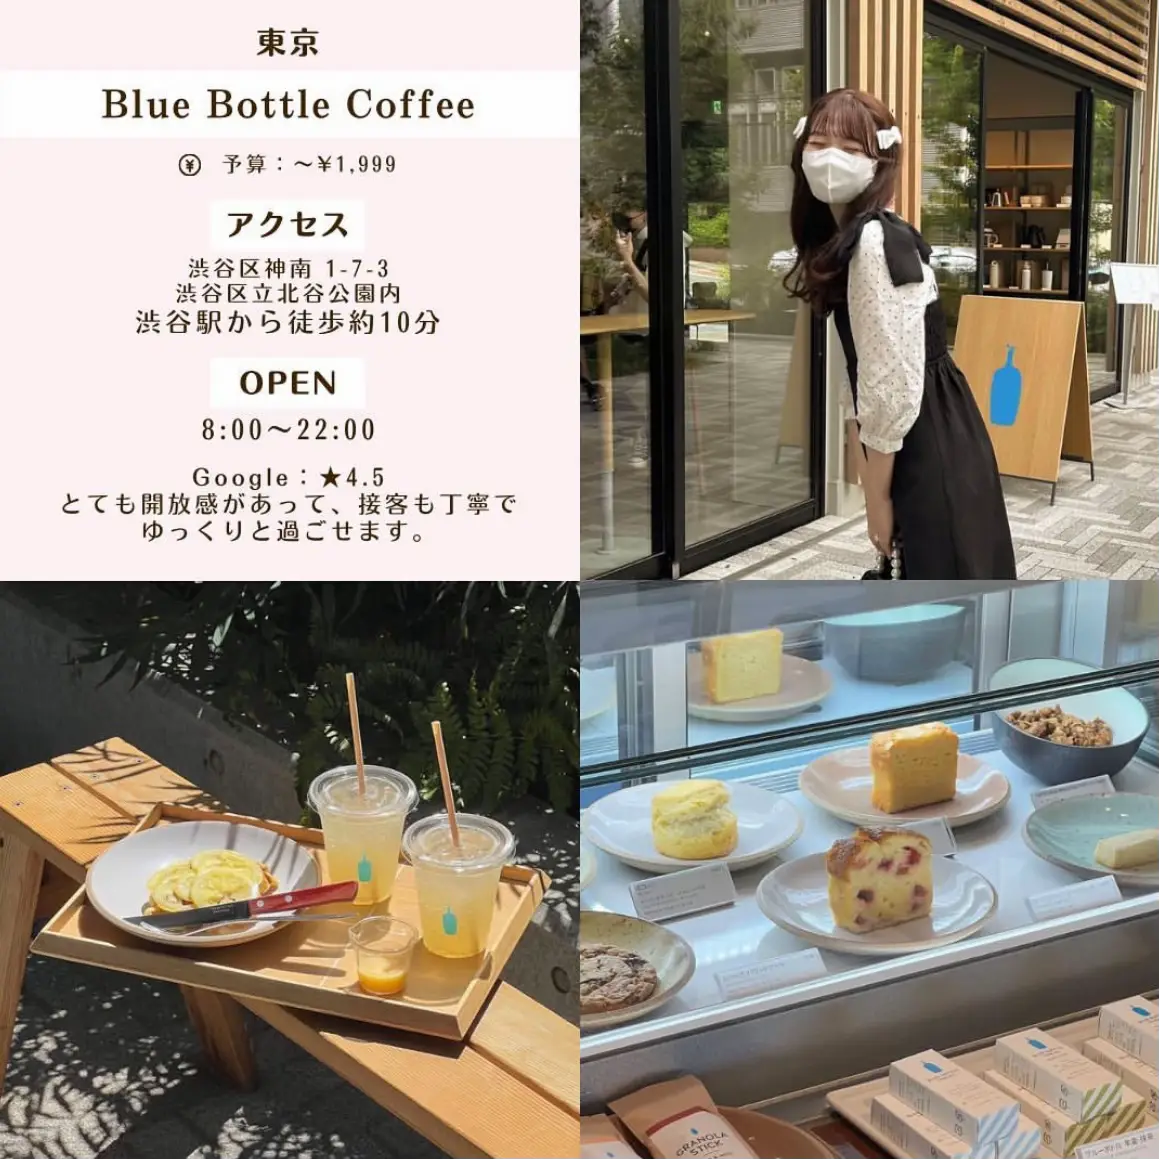 パンが美味しいカフェ渋谷 - Lemon8検索